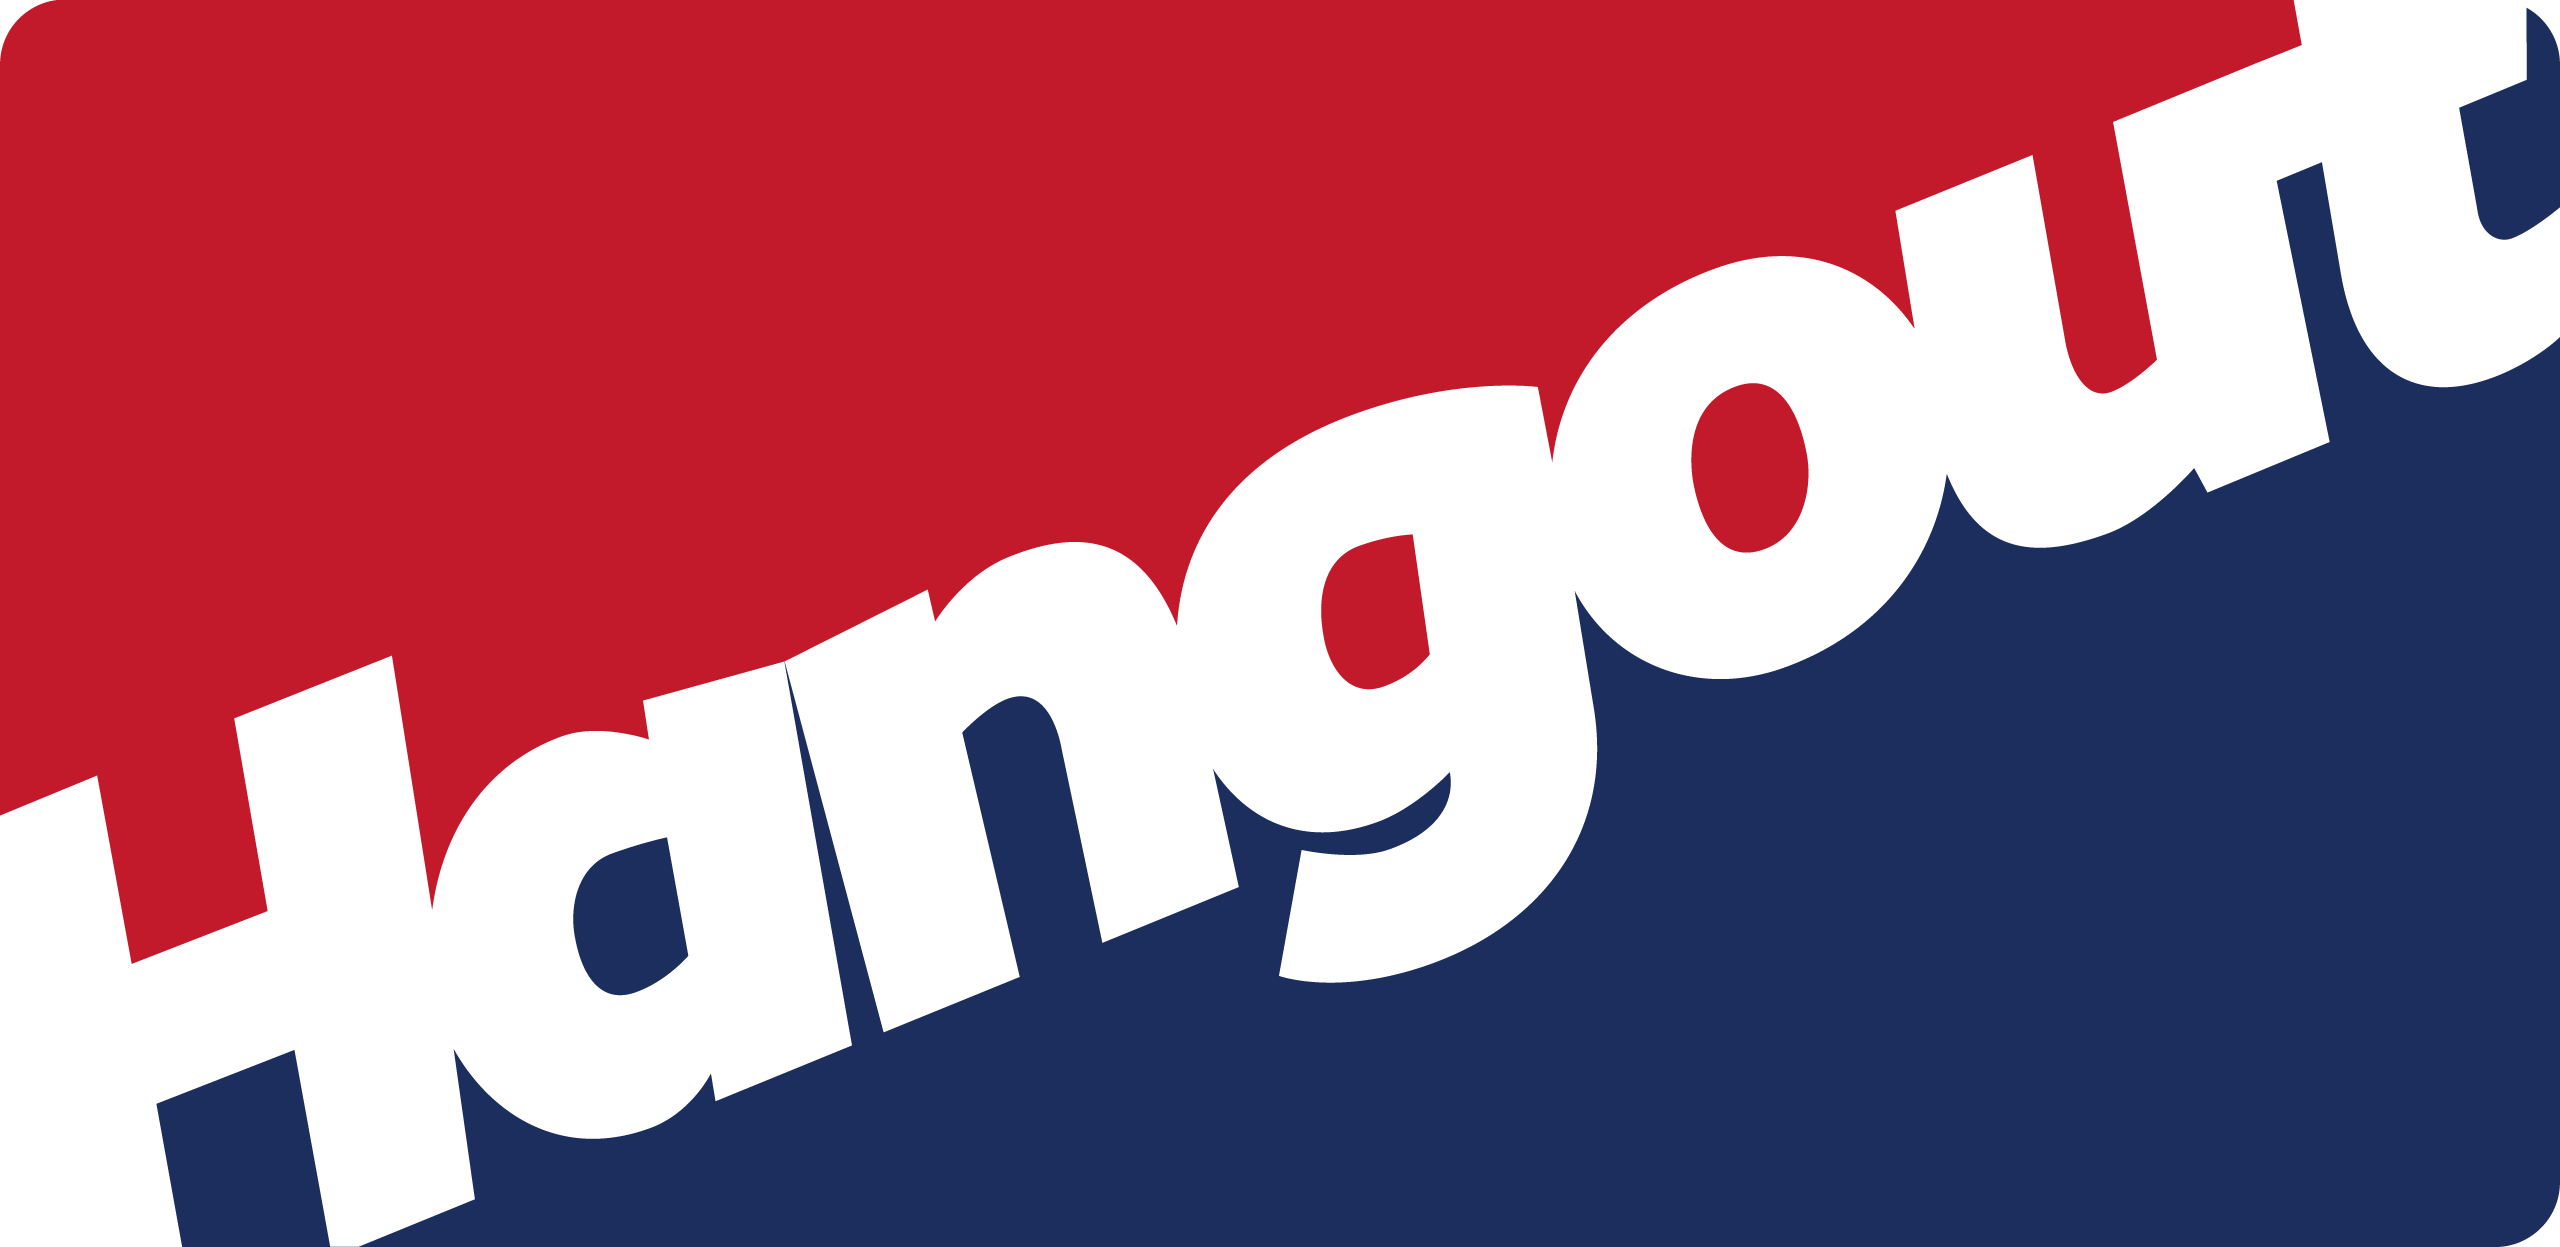 hangout logo